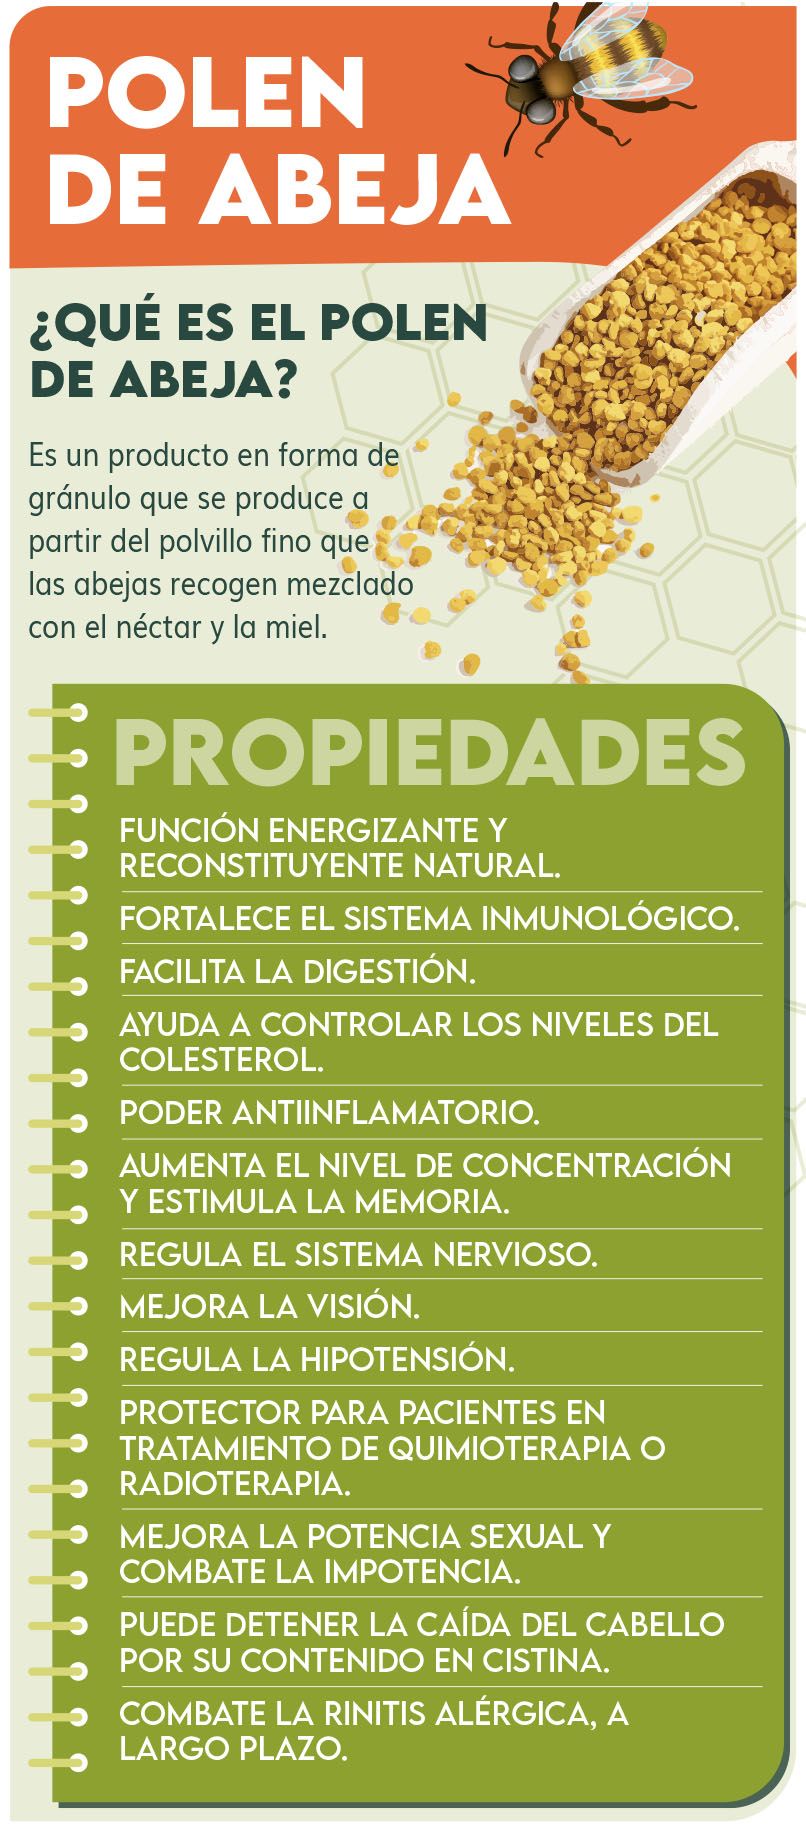 Los beneficios del polen de abeja - Miel Antonio Simón